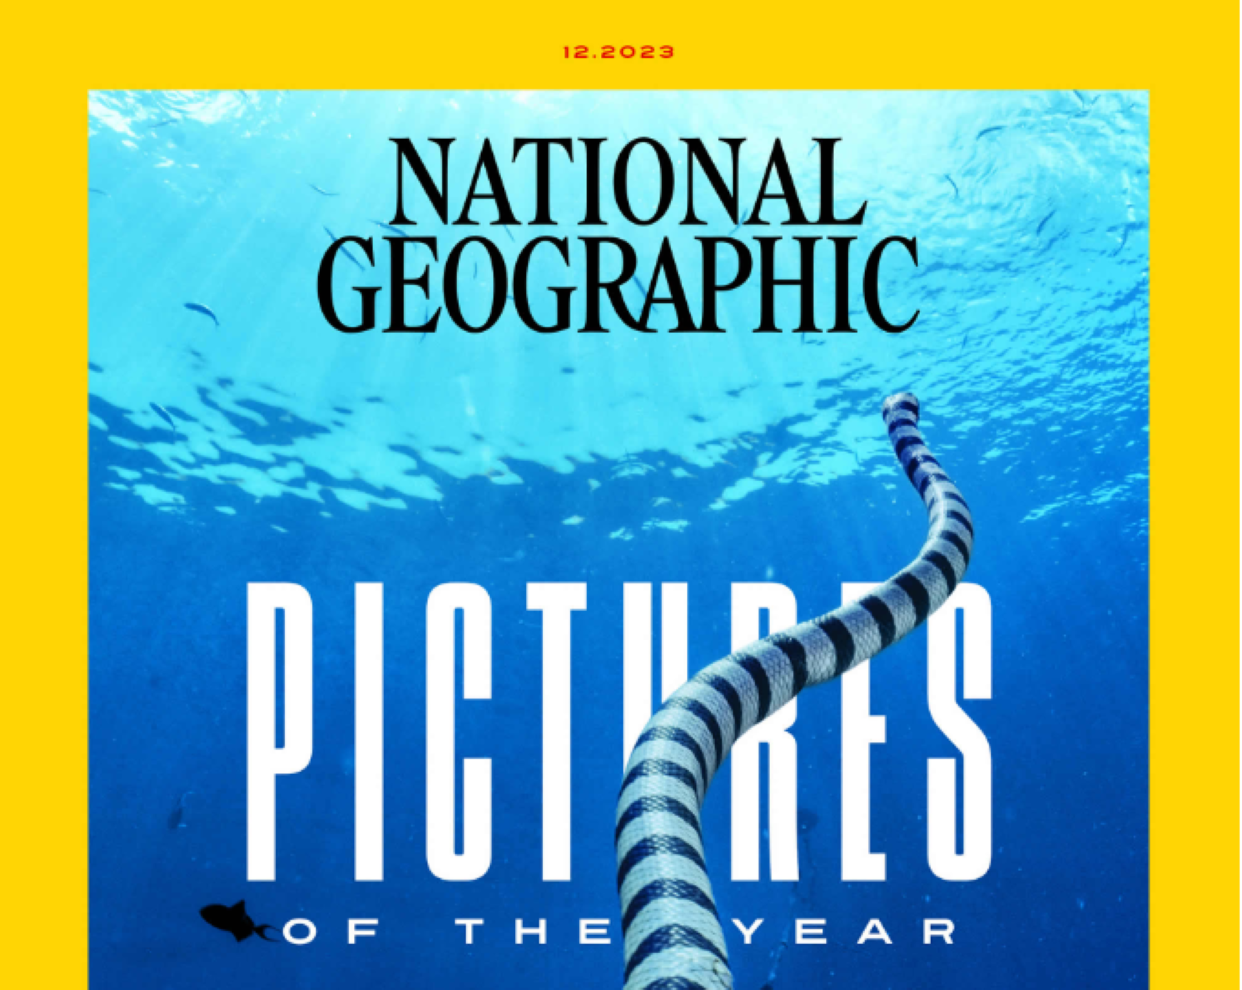 'National Geographic' desvela las imágenes del año 2023